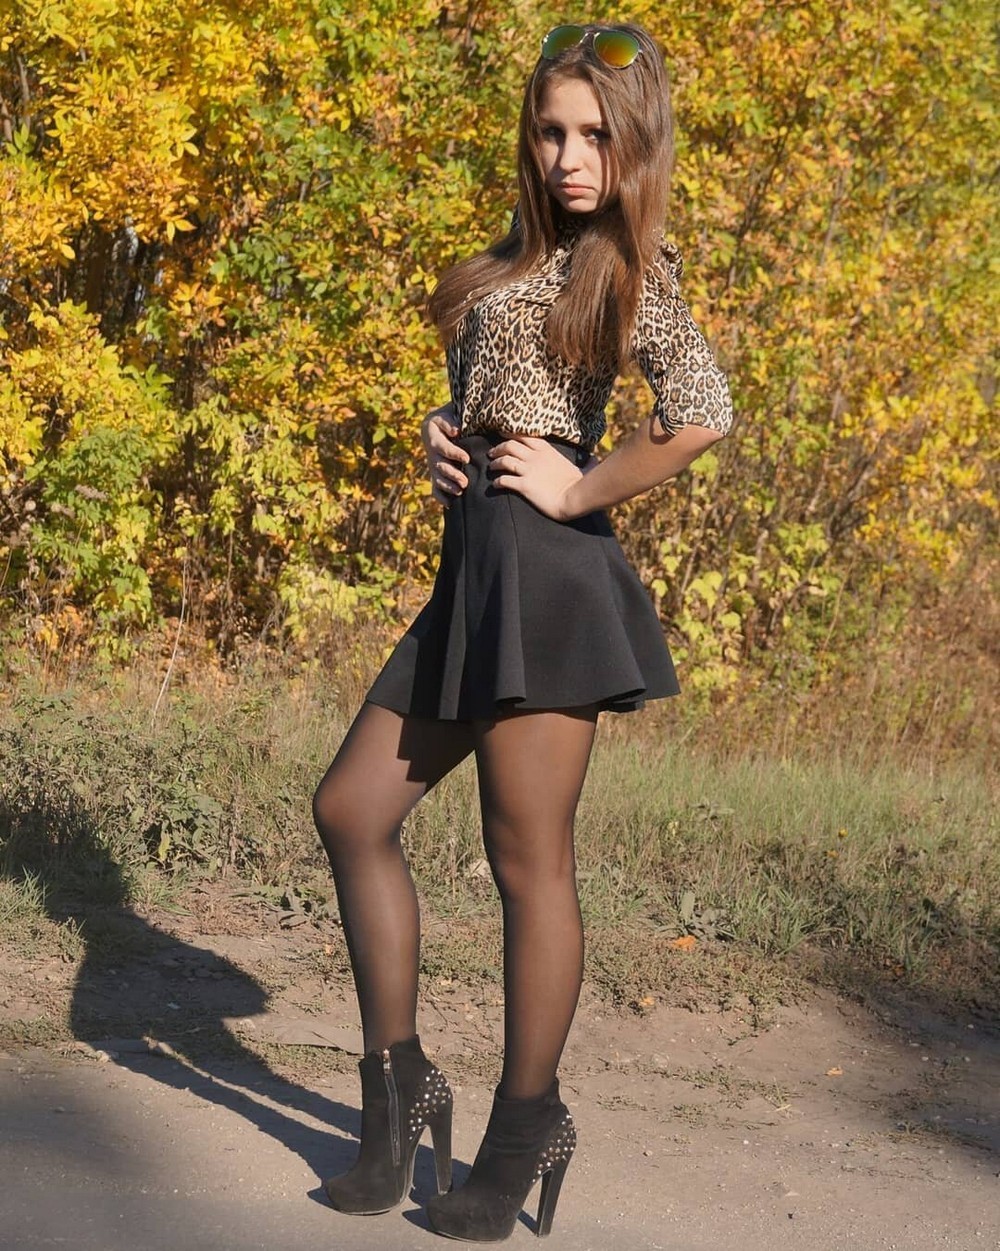 русские девушки юбках фото